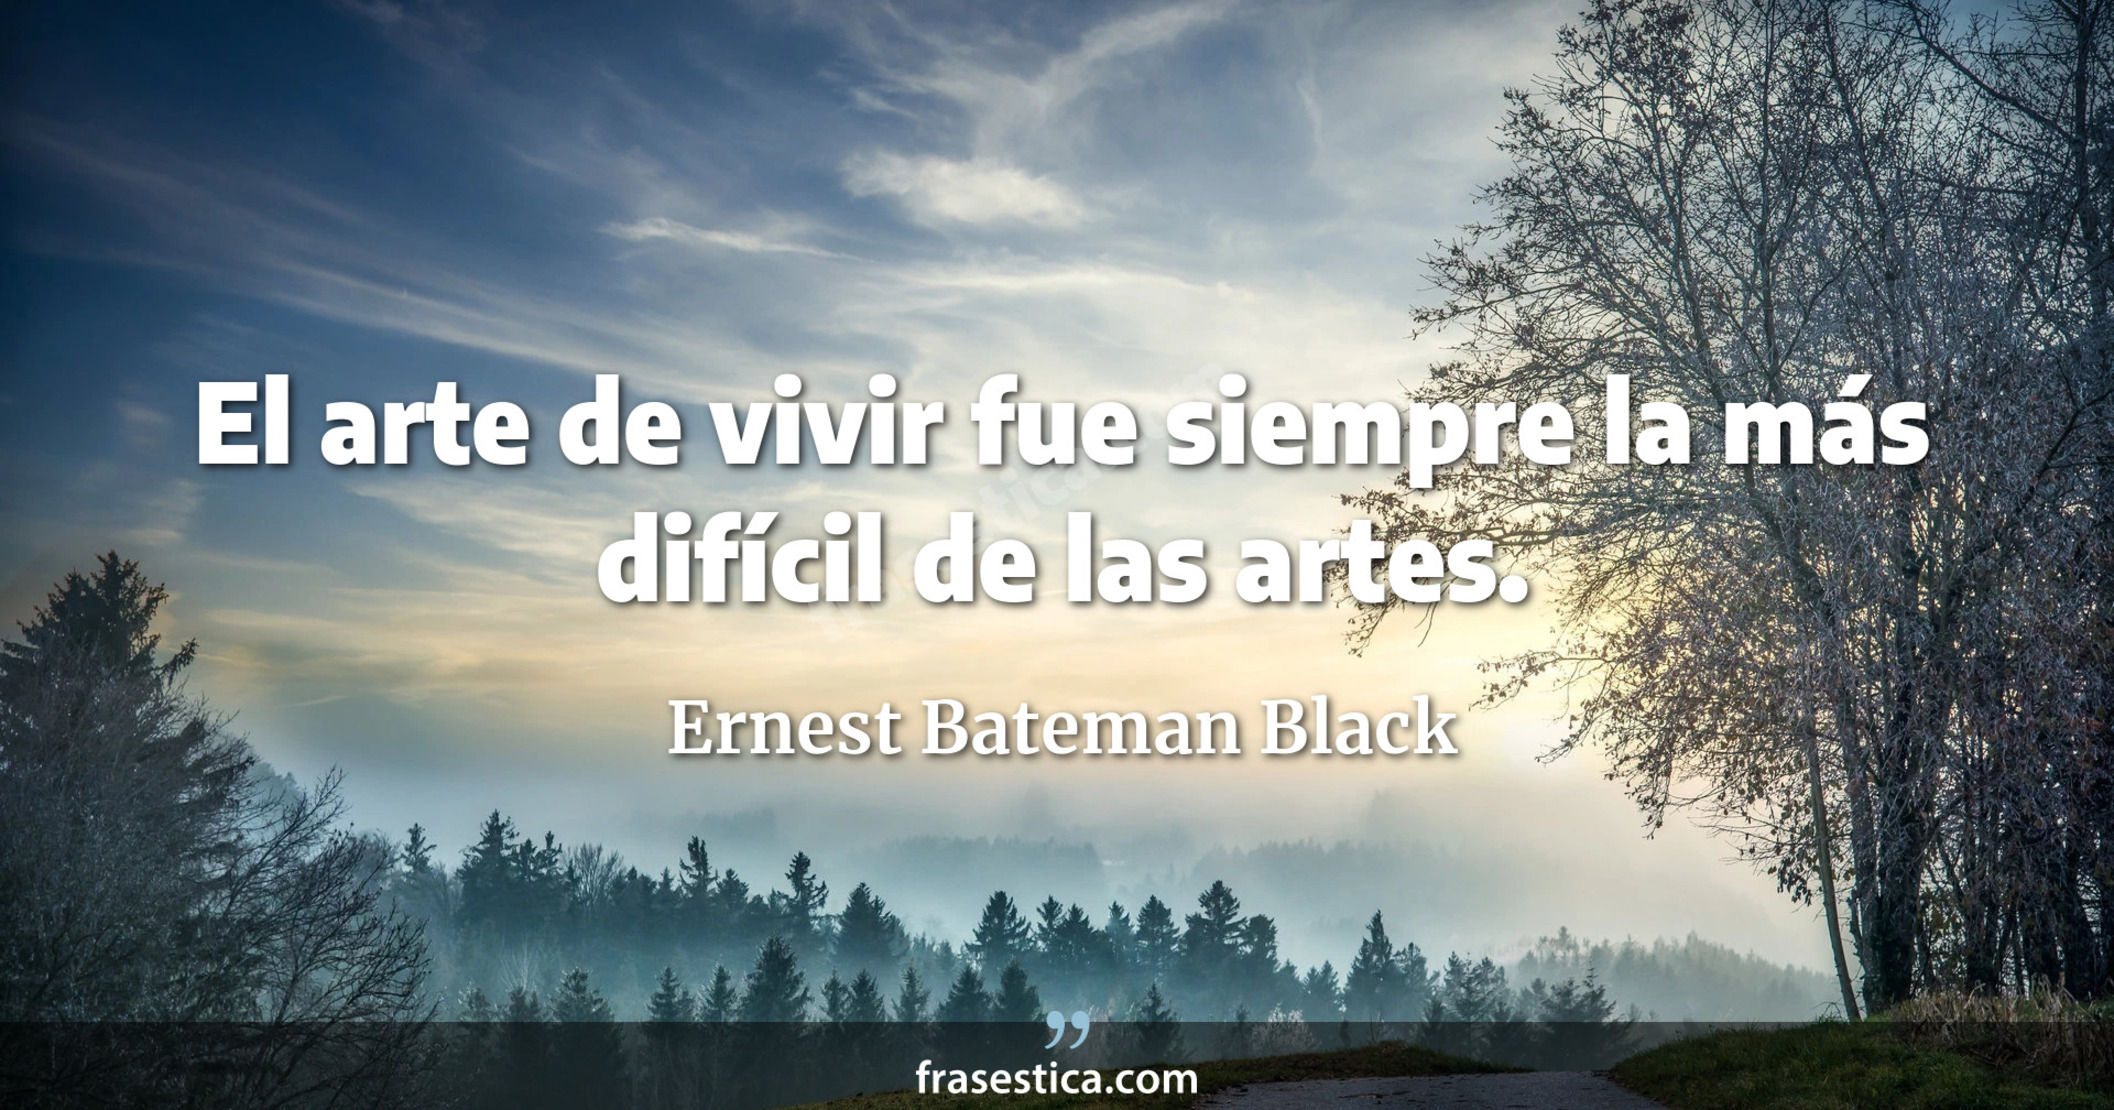 El arte de vivir fue siempre la más difícil de las artes. - Ernest Bateman Black